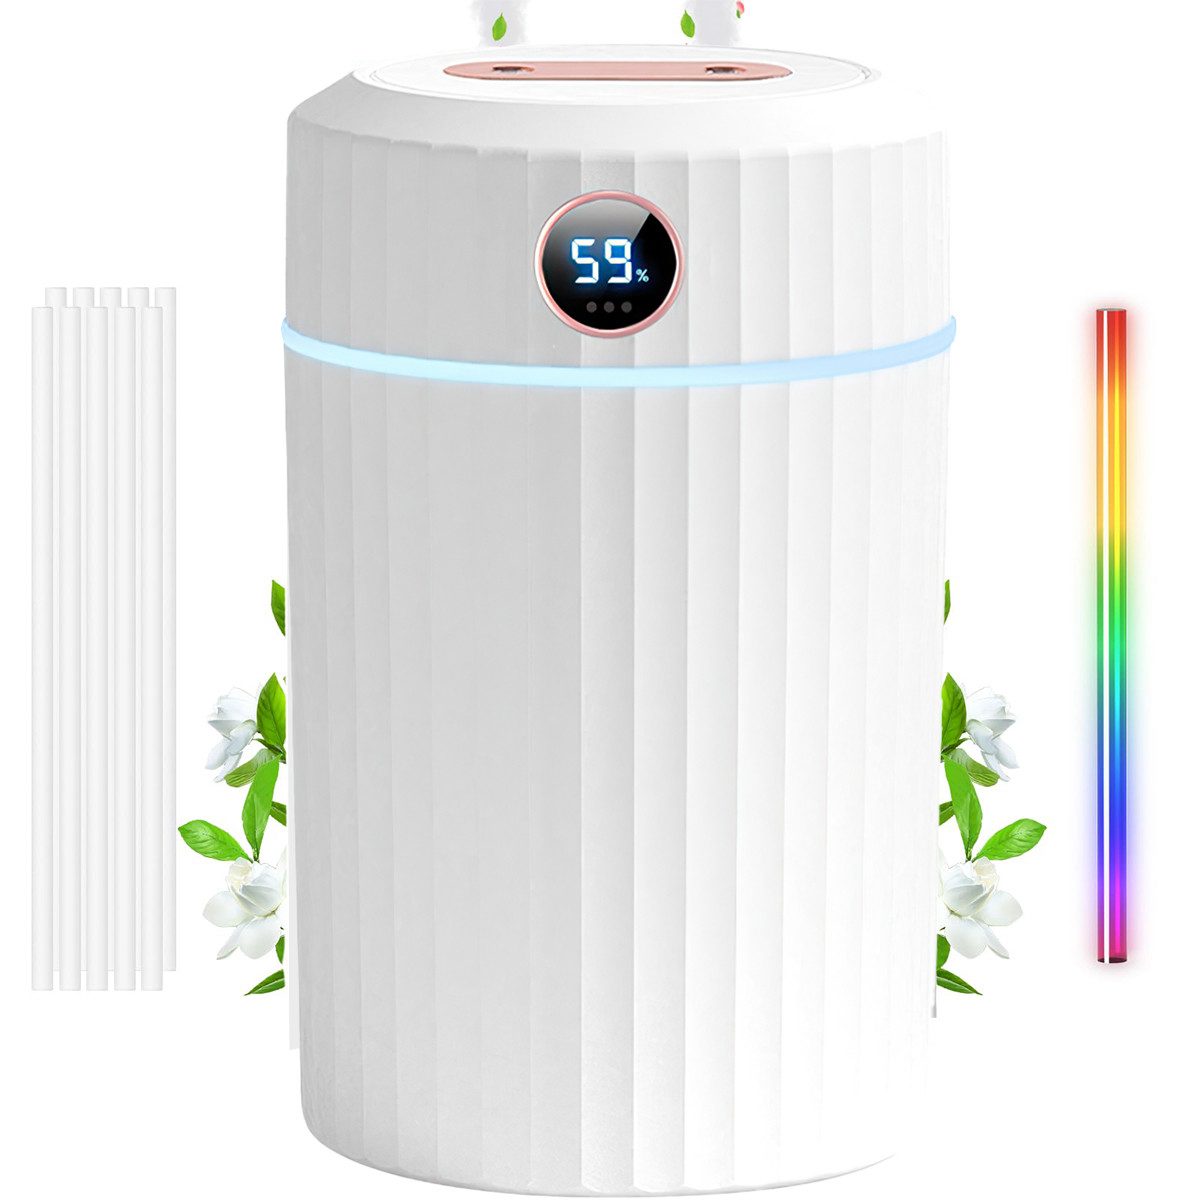 DOPWii Luftbefeuchter Luftbefeuchter für Schlafzimmer, 2-Liter-Luftbefeuchter mit zwei Düsen, und Digitalanzeige, extrem leise mit einstellbarem Nebel für Zuhause